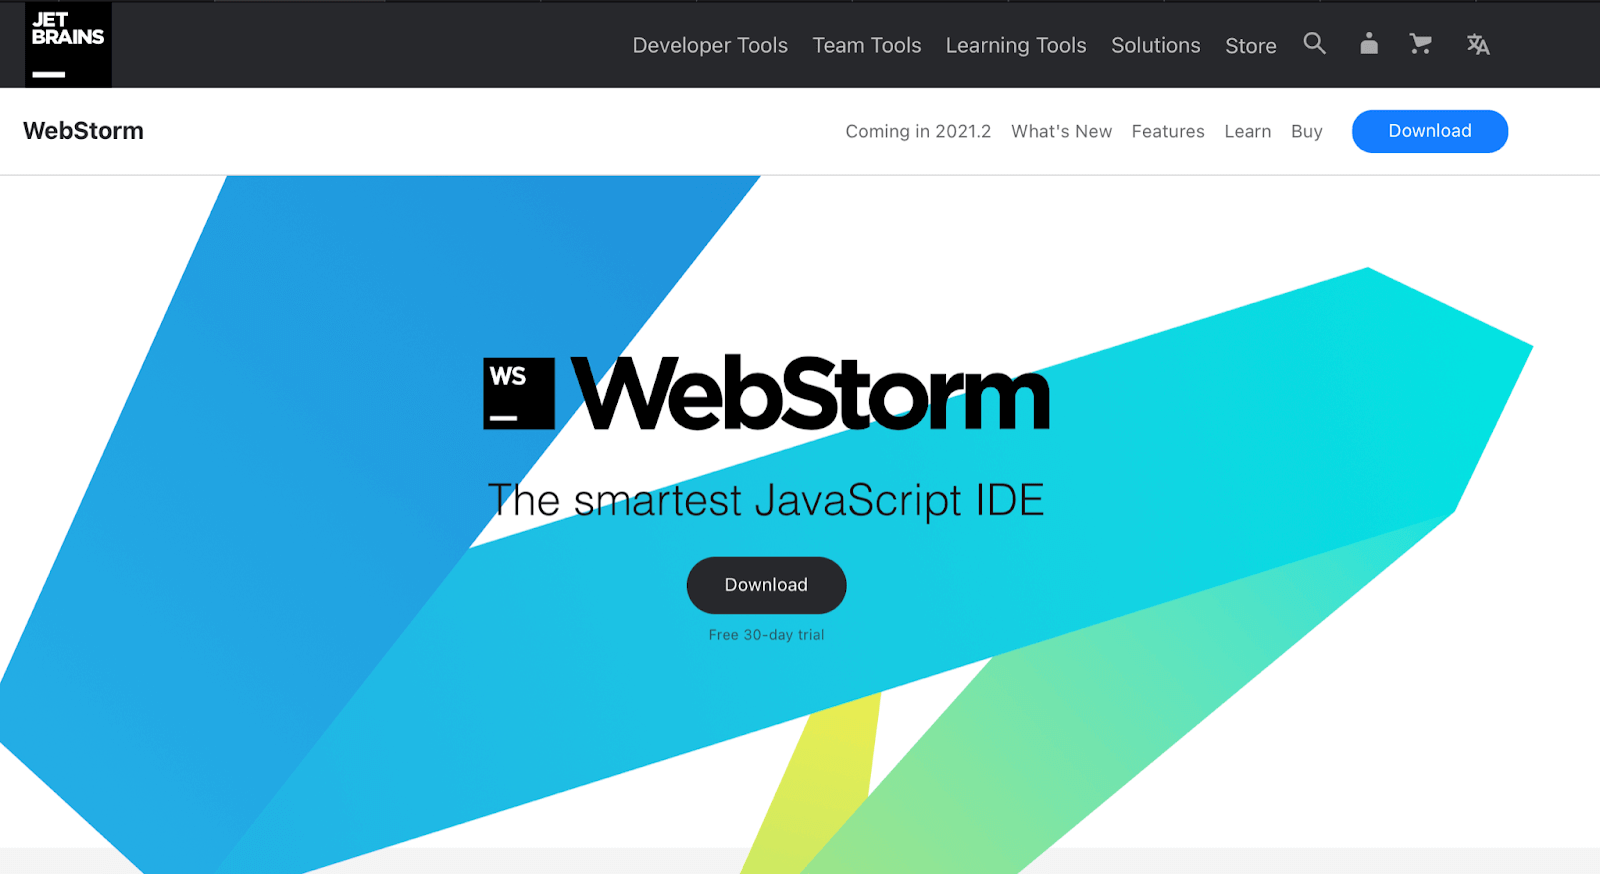 Webstorm